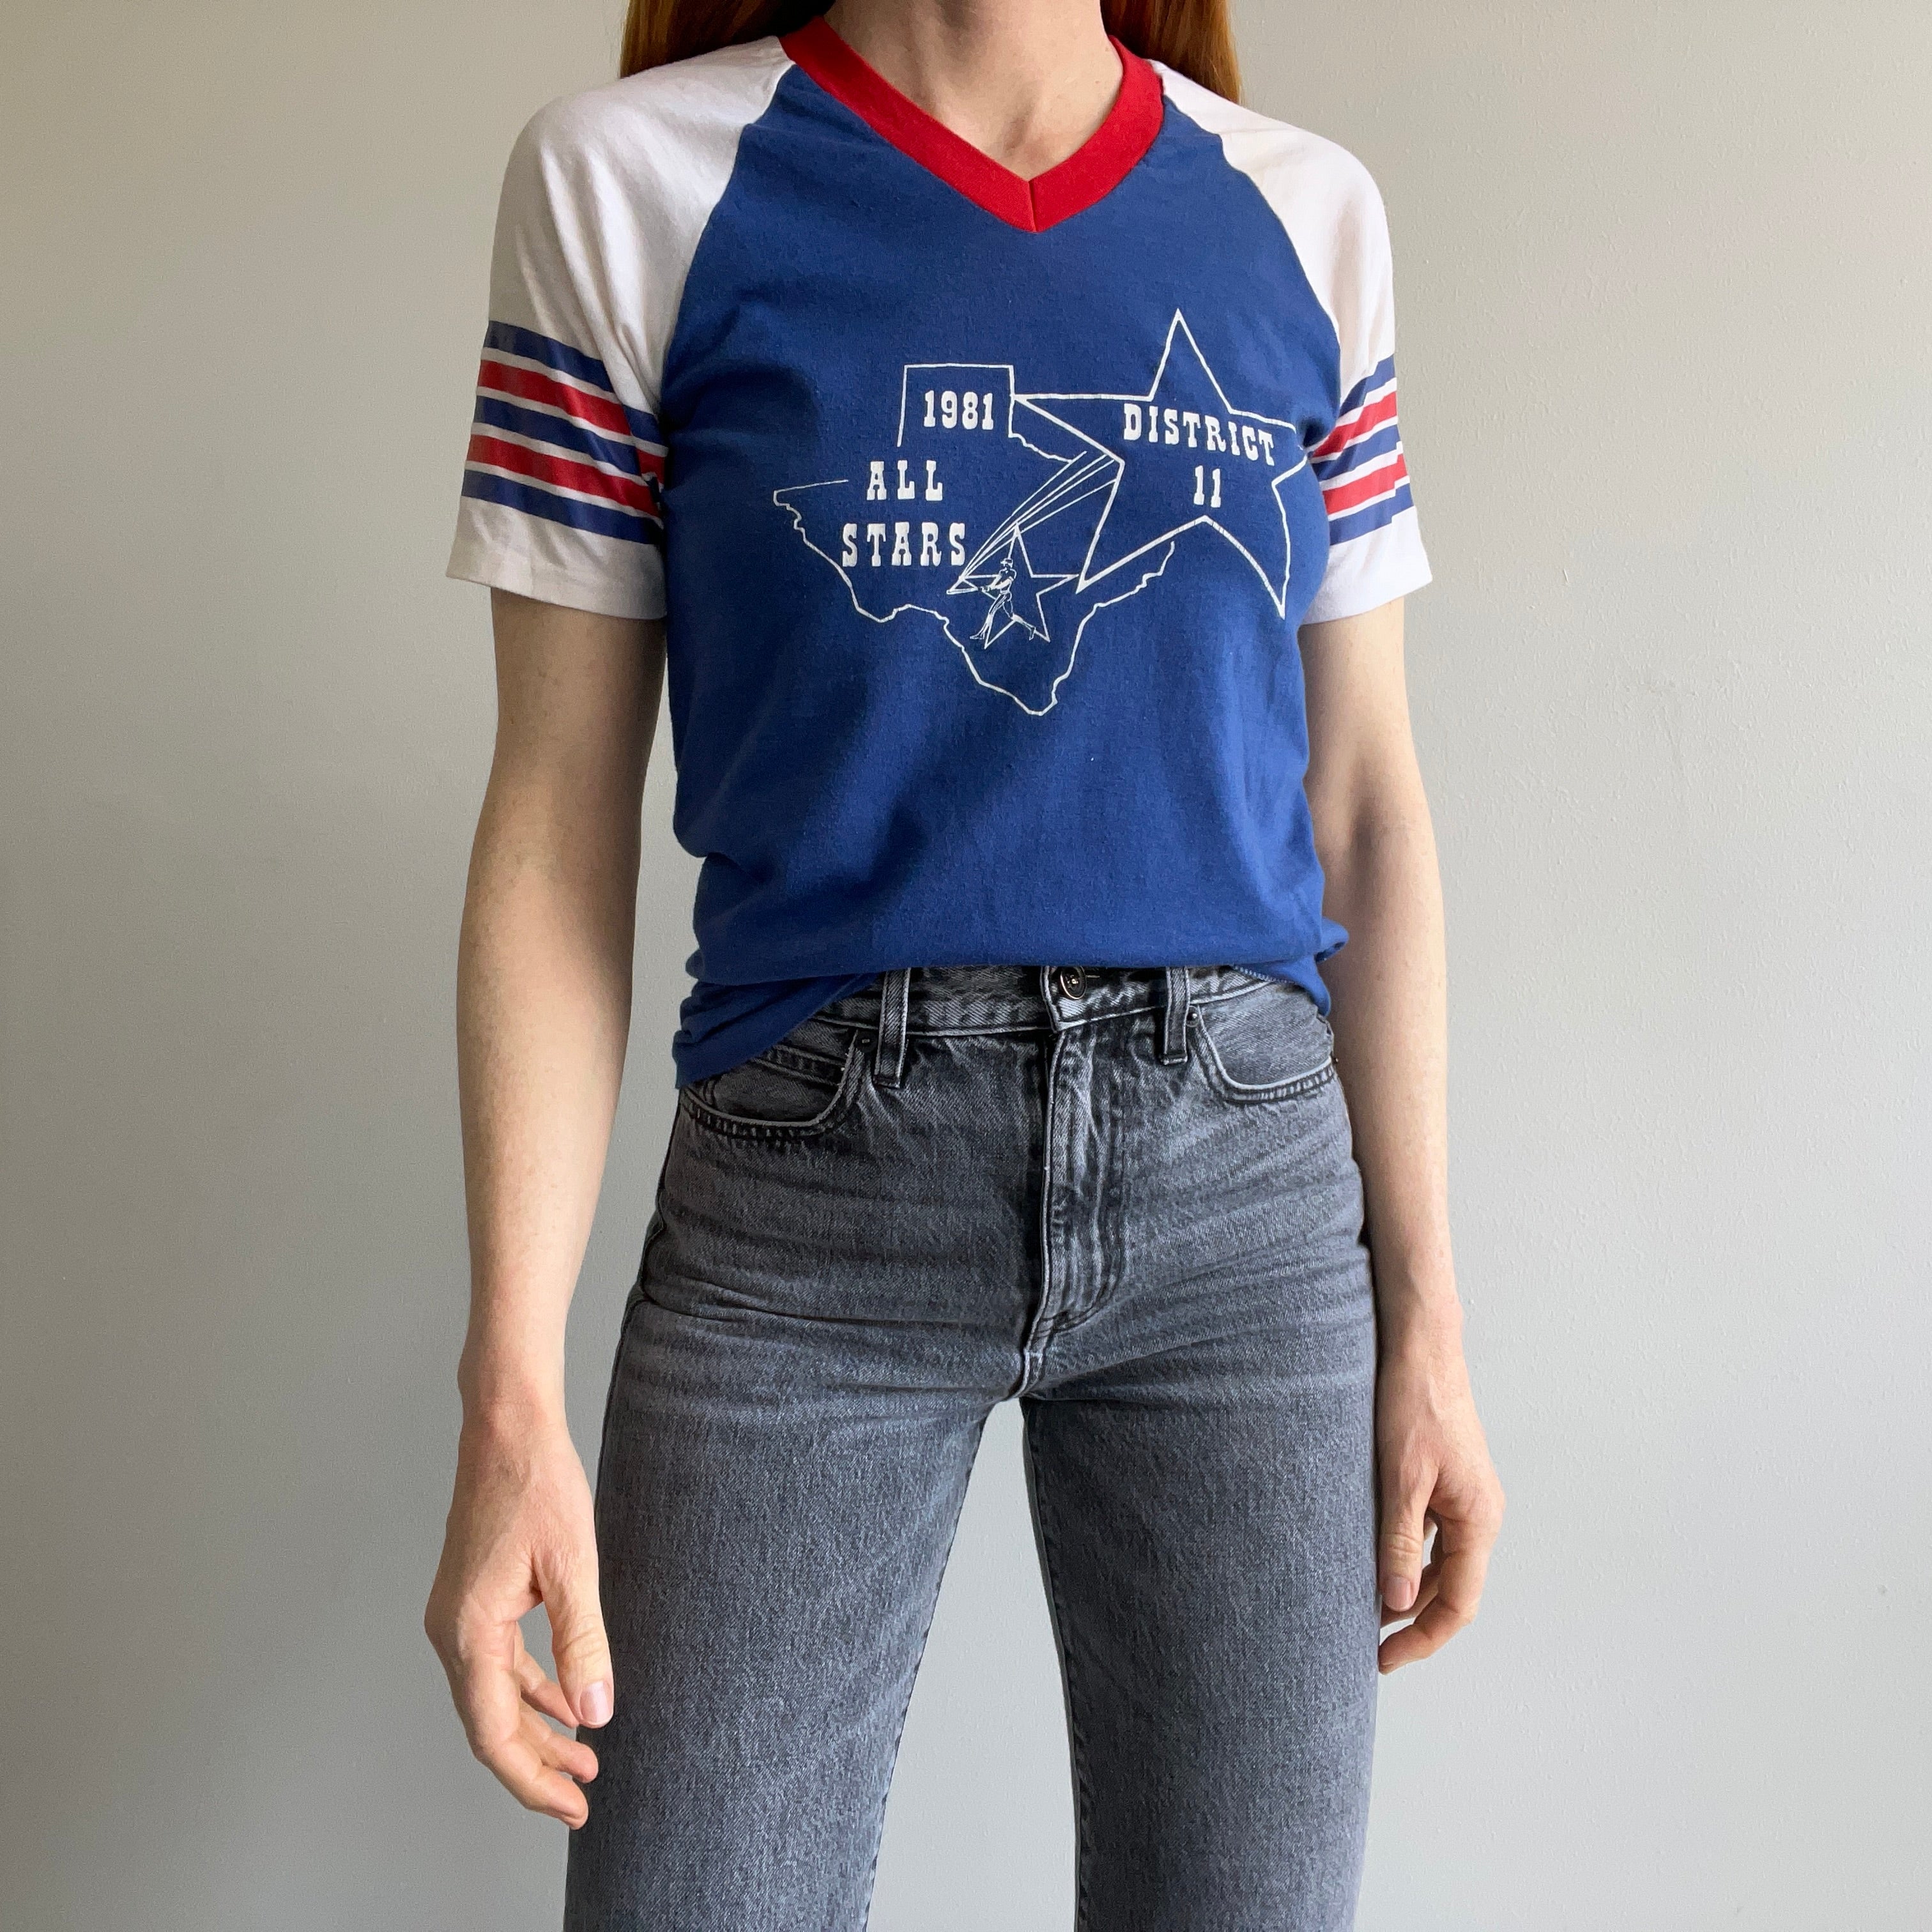 1981 District 11 All Stars V-Neck Baseball T-Shirt